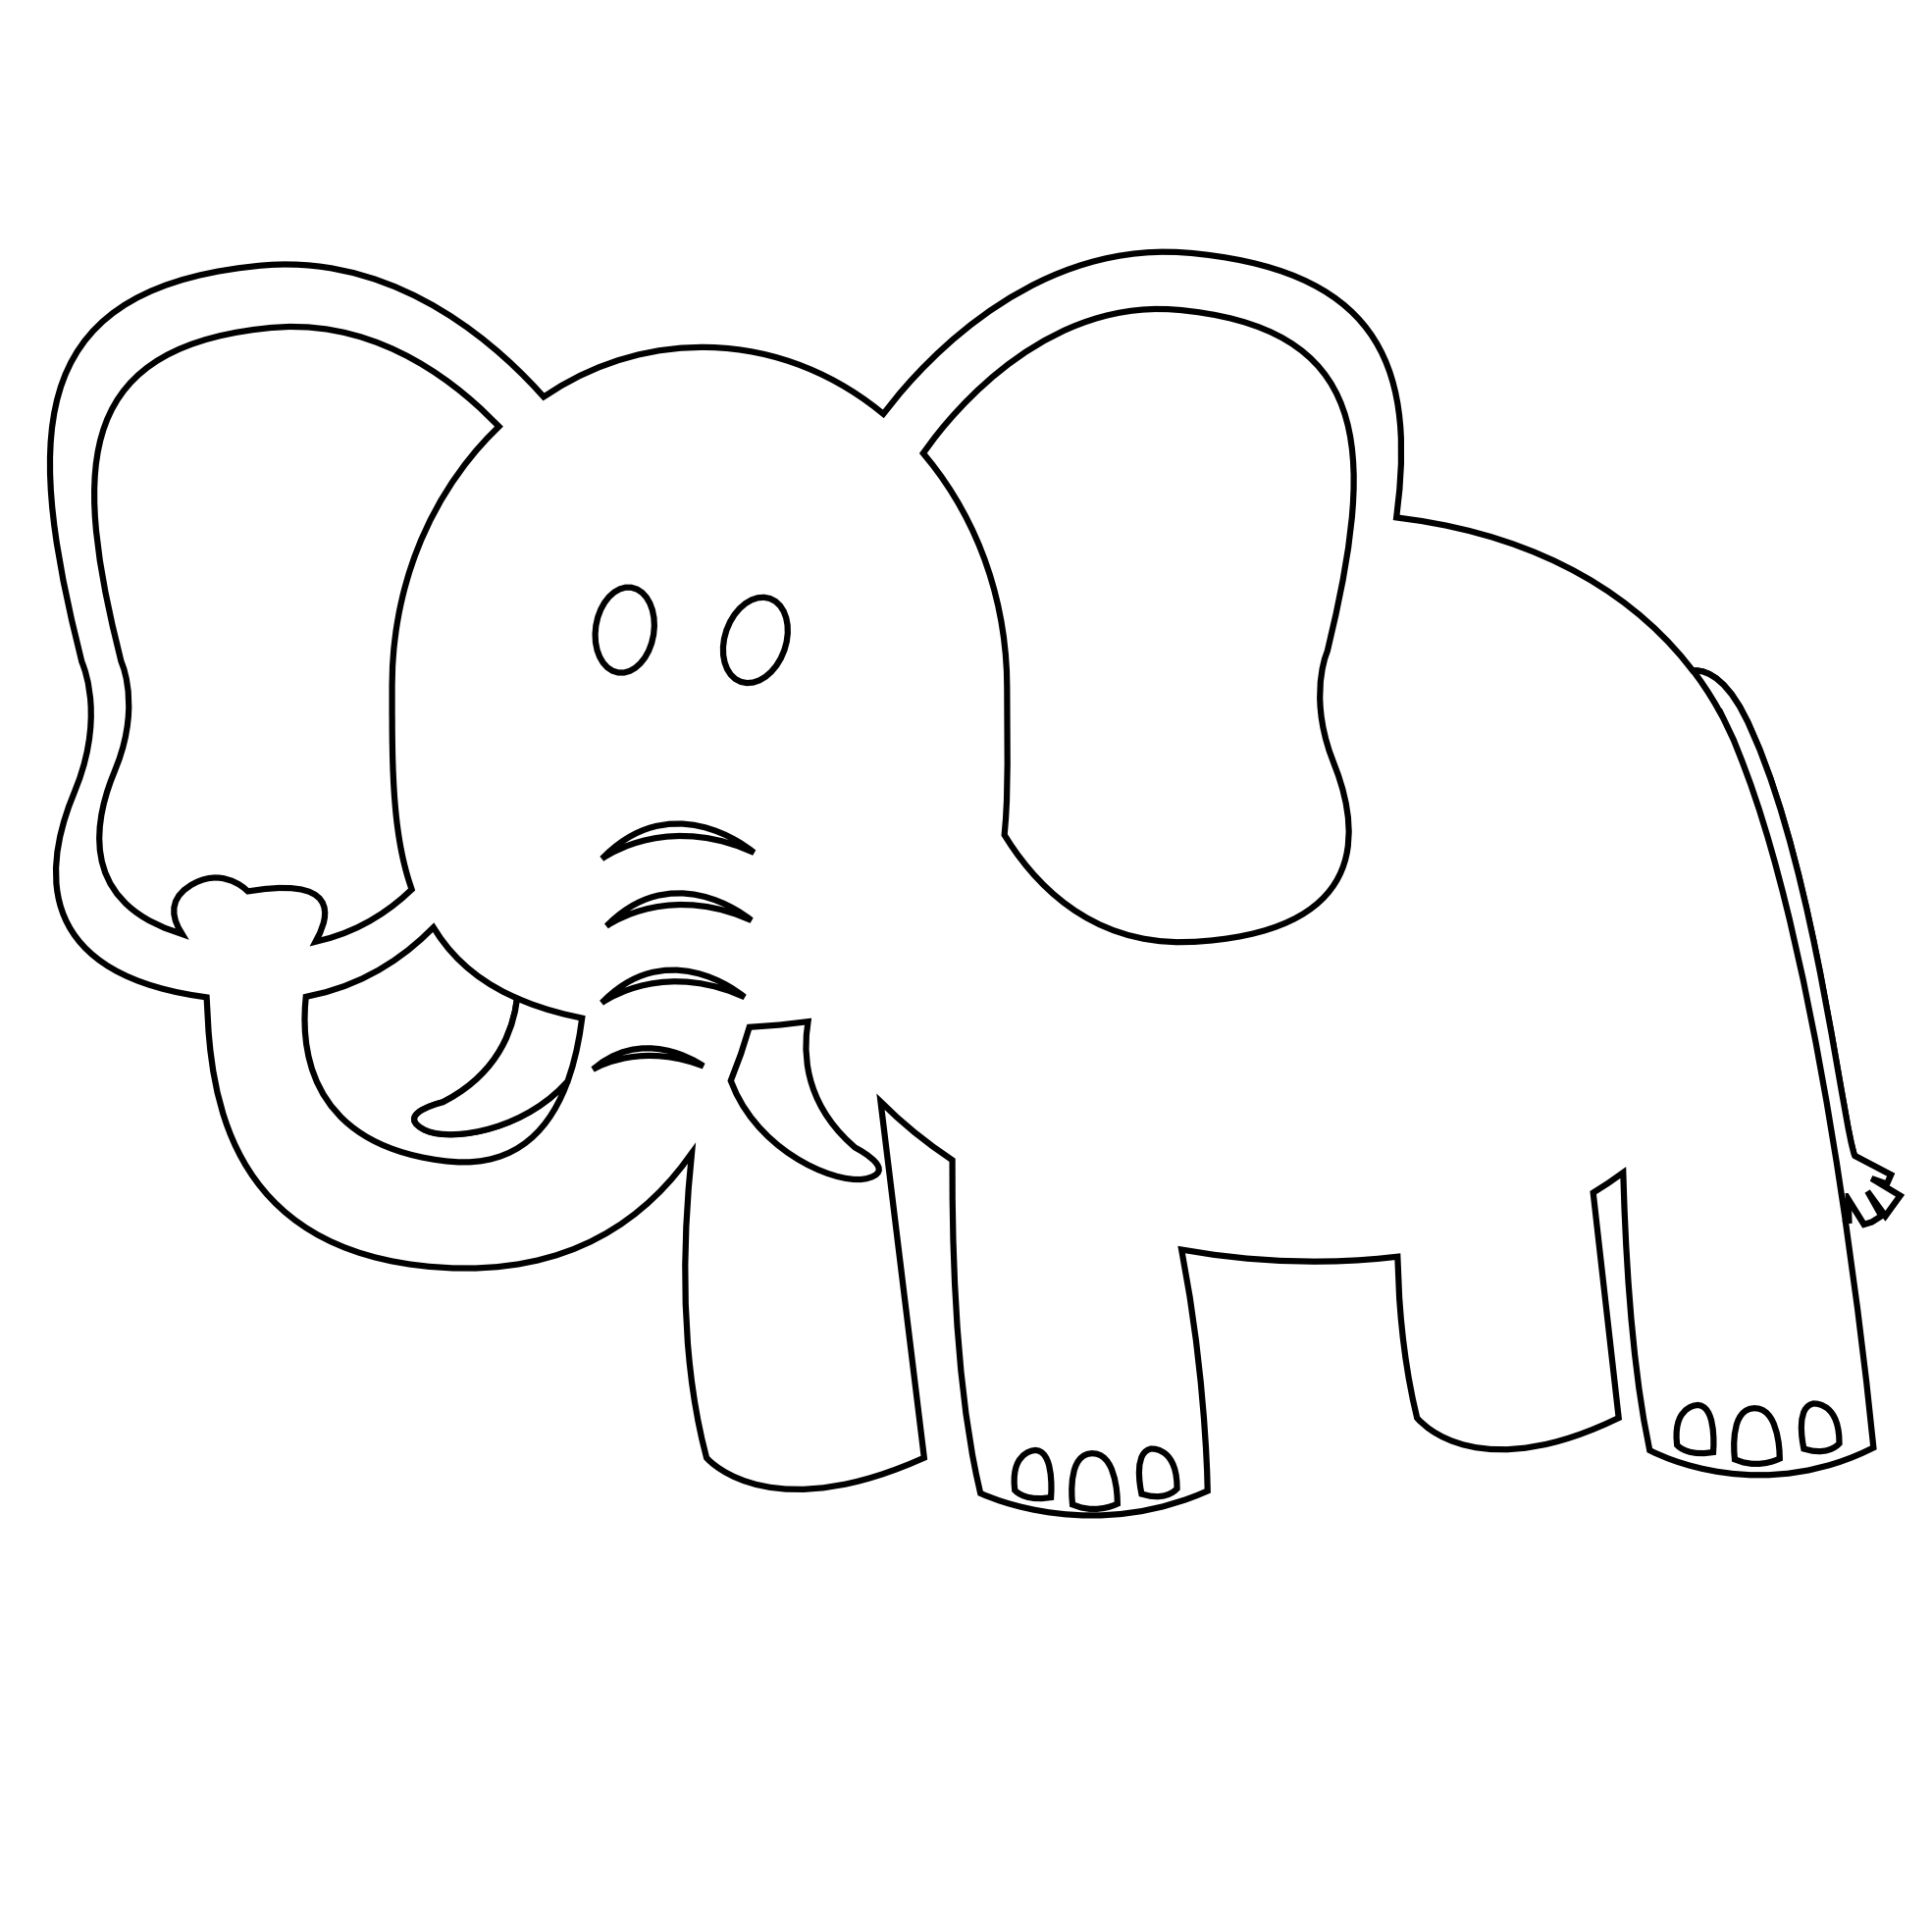 Elephant clipart ethnic, Elephant ethnic Transparent FREE ...